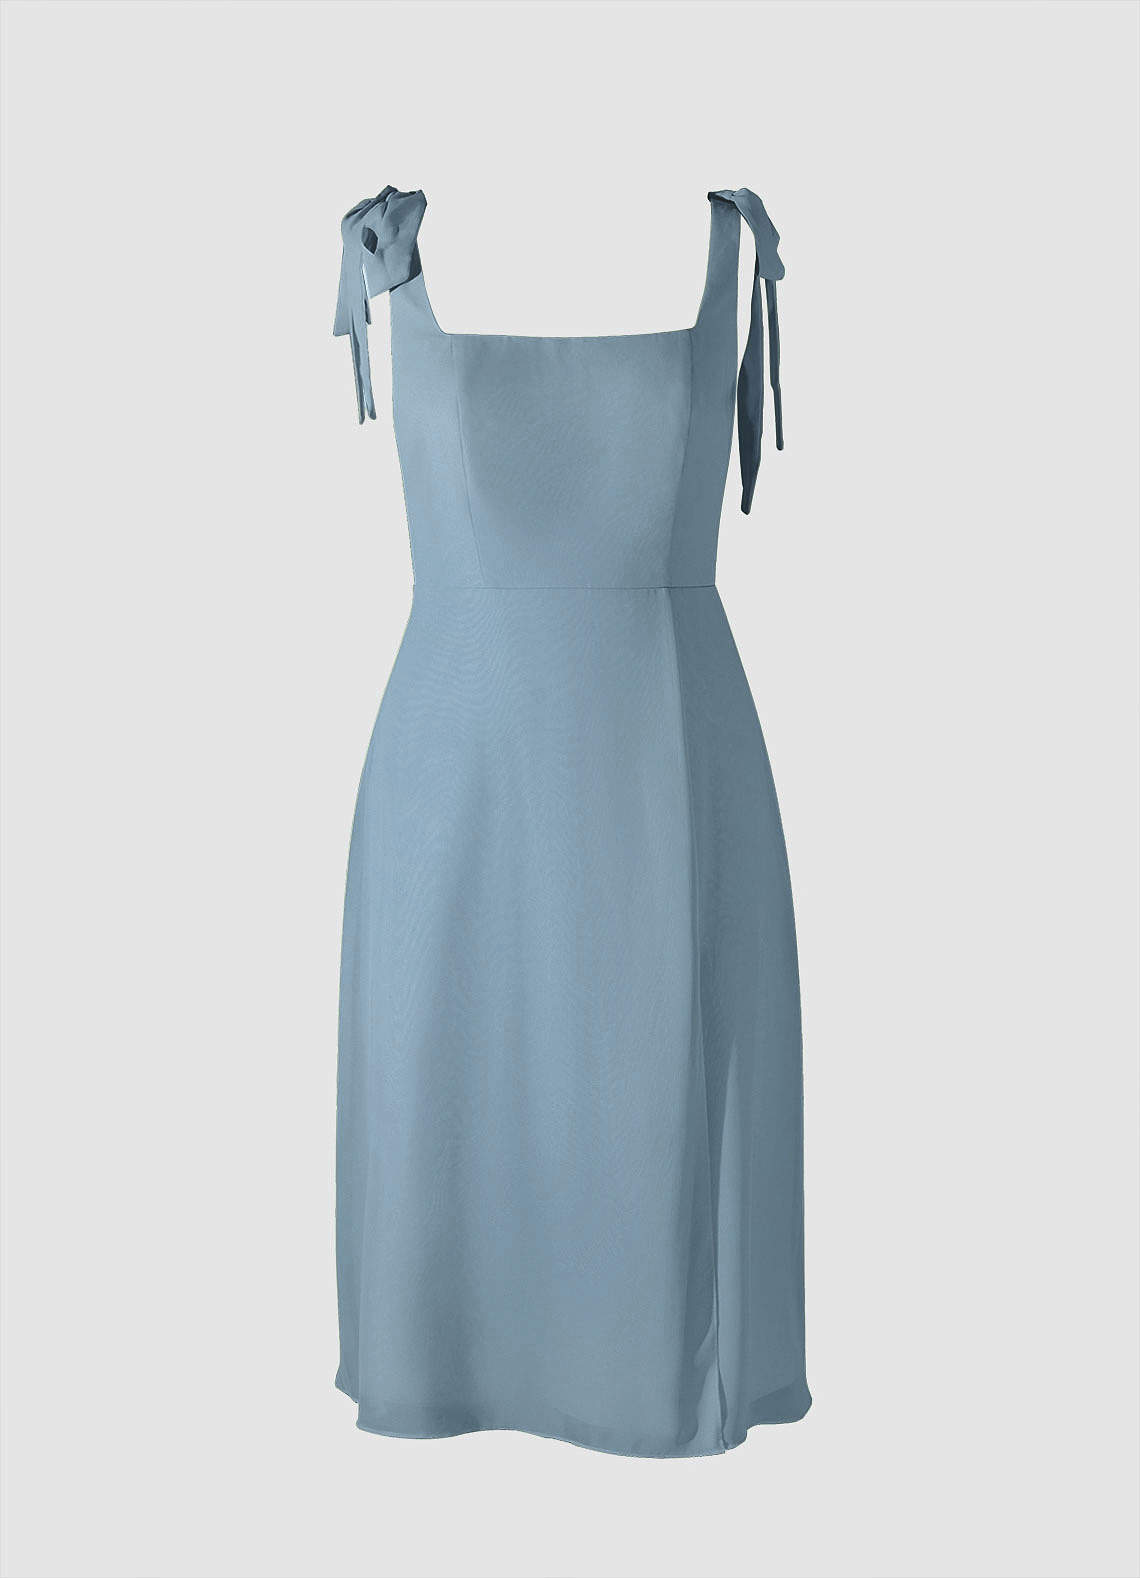 Bow Tie Dusty Blue Chiffon Midi Dress With Slit image1